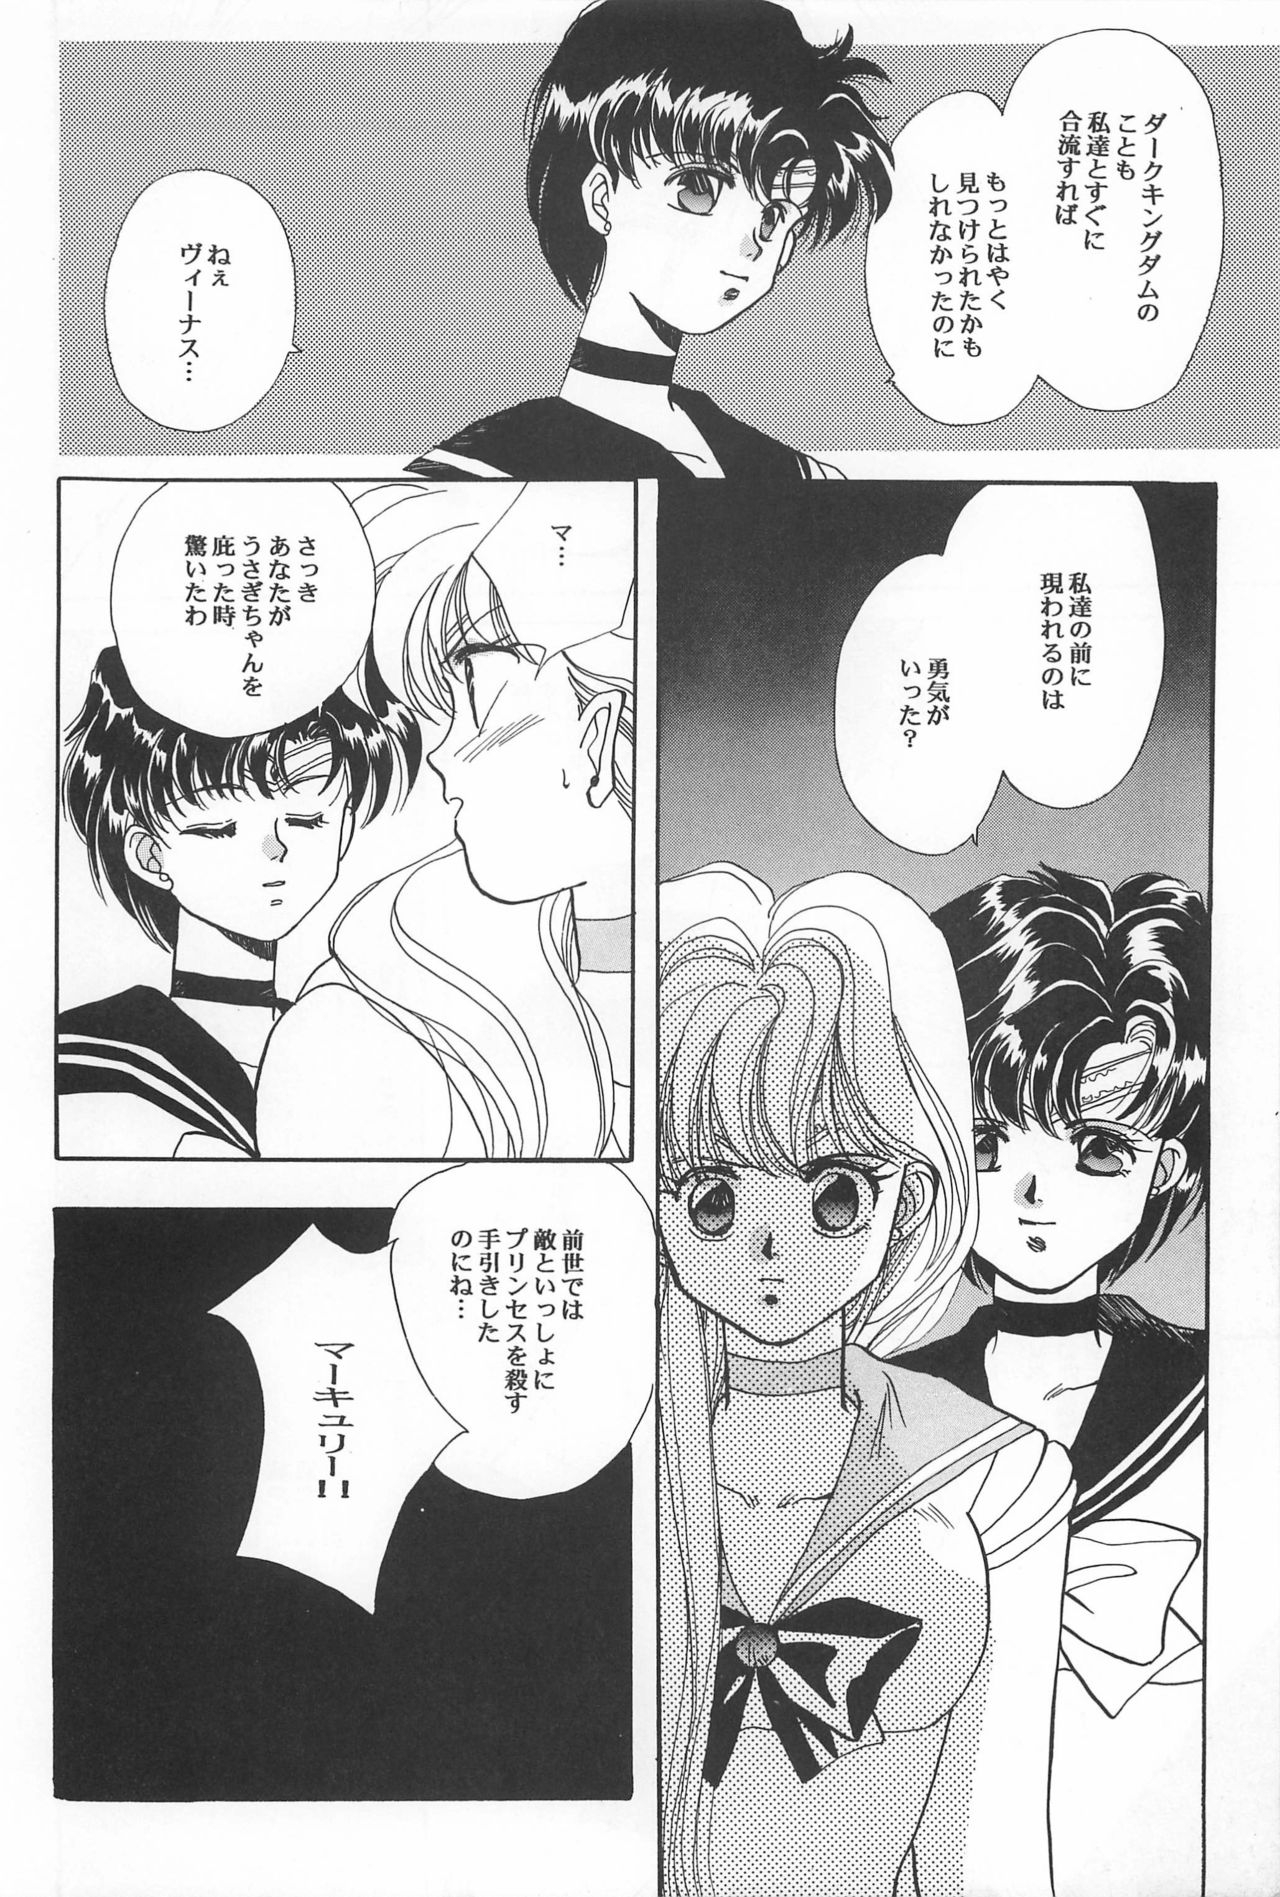 [Hello World (Muttri Moony)] Kaze no You ni Yume no You ni - Sailor Moon Collection (Sailor Moon) 139